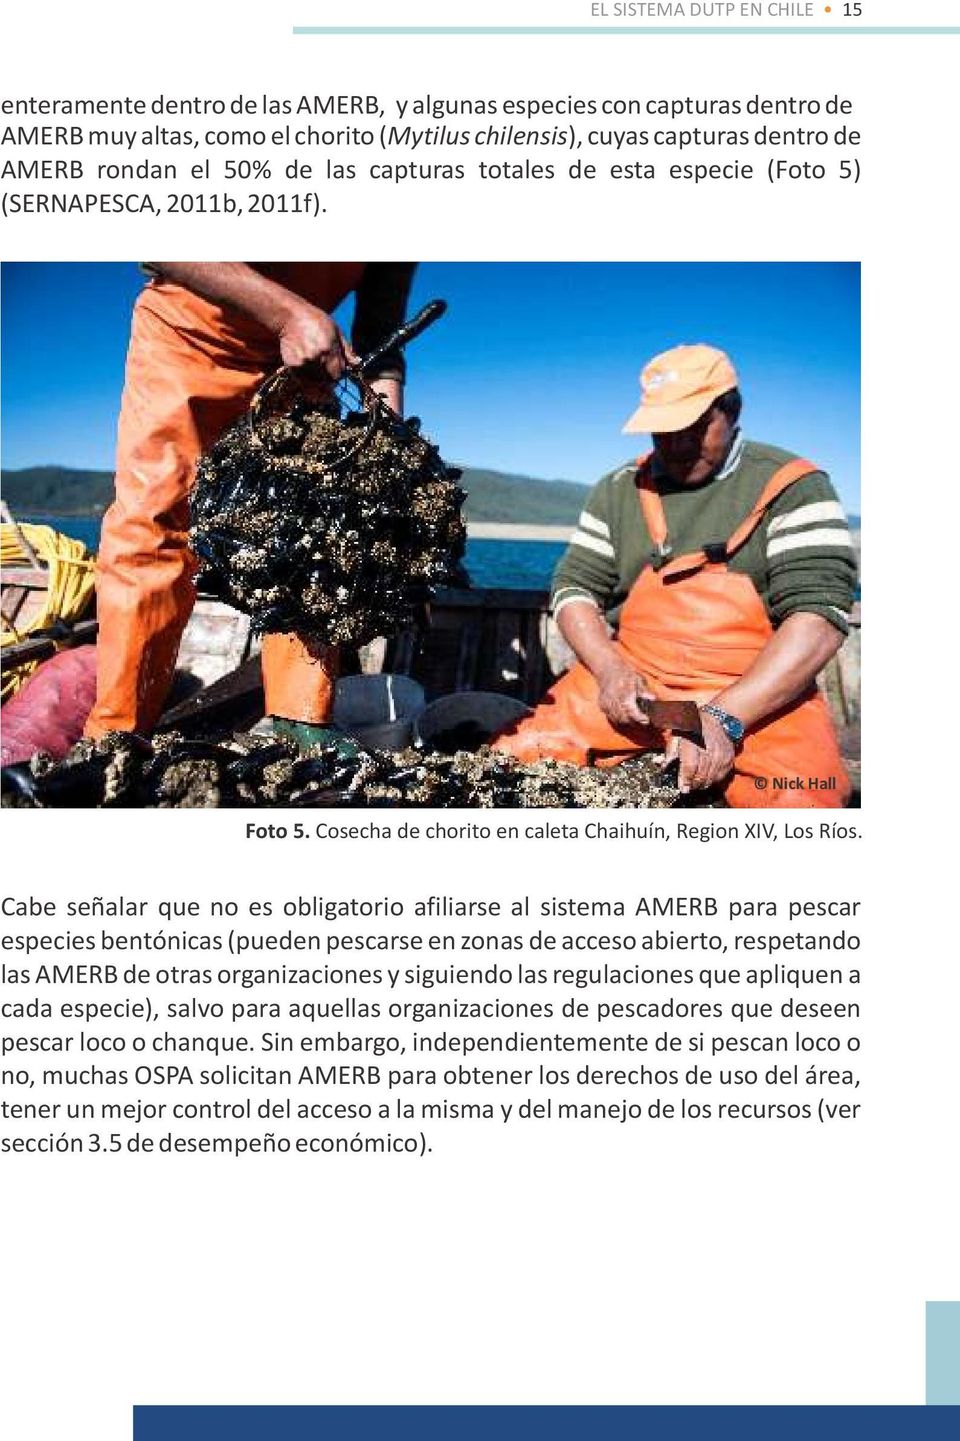 Cabe señalar que no es obligatorio afiliarse al sistema AMERB para pescar especies bentónicas (pueden pescarse en zonas de acceso abierto, respetando las AMERB de otras organizaciones y siguiendo las